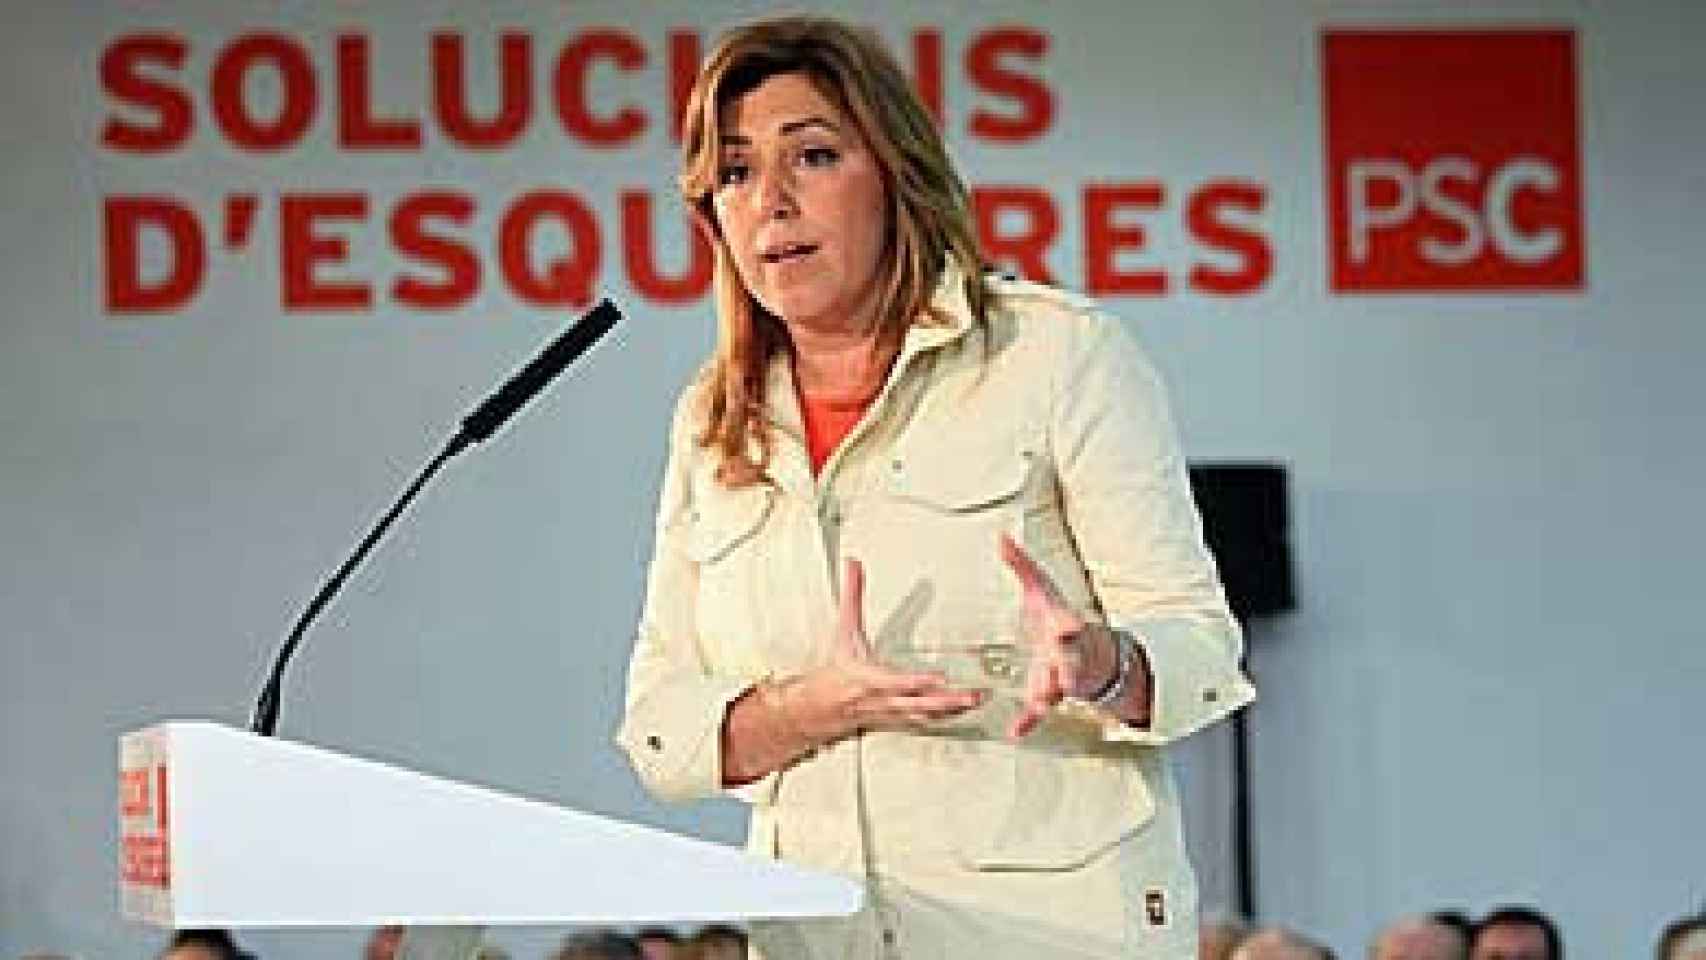 La presidenta de la Junta de Andalucía, Susana Díaz (PSOE), durante un acto organizado por el PSC en Hospitalet